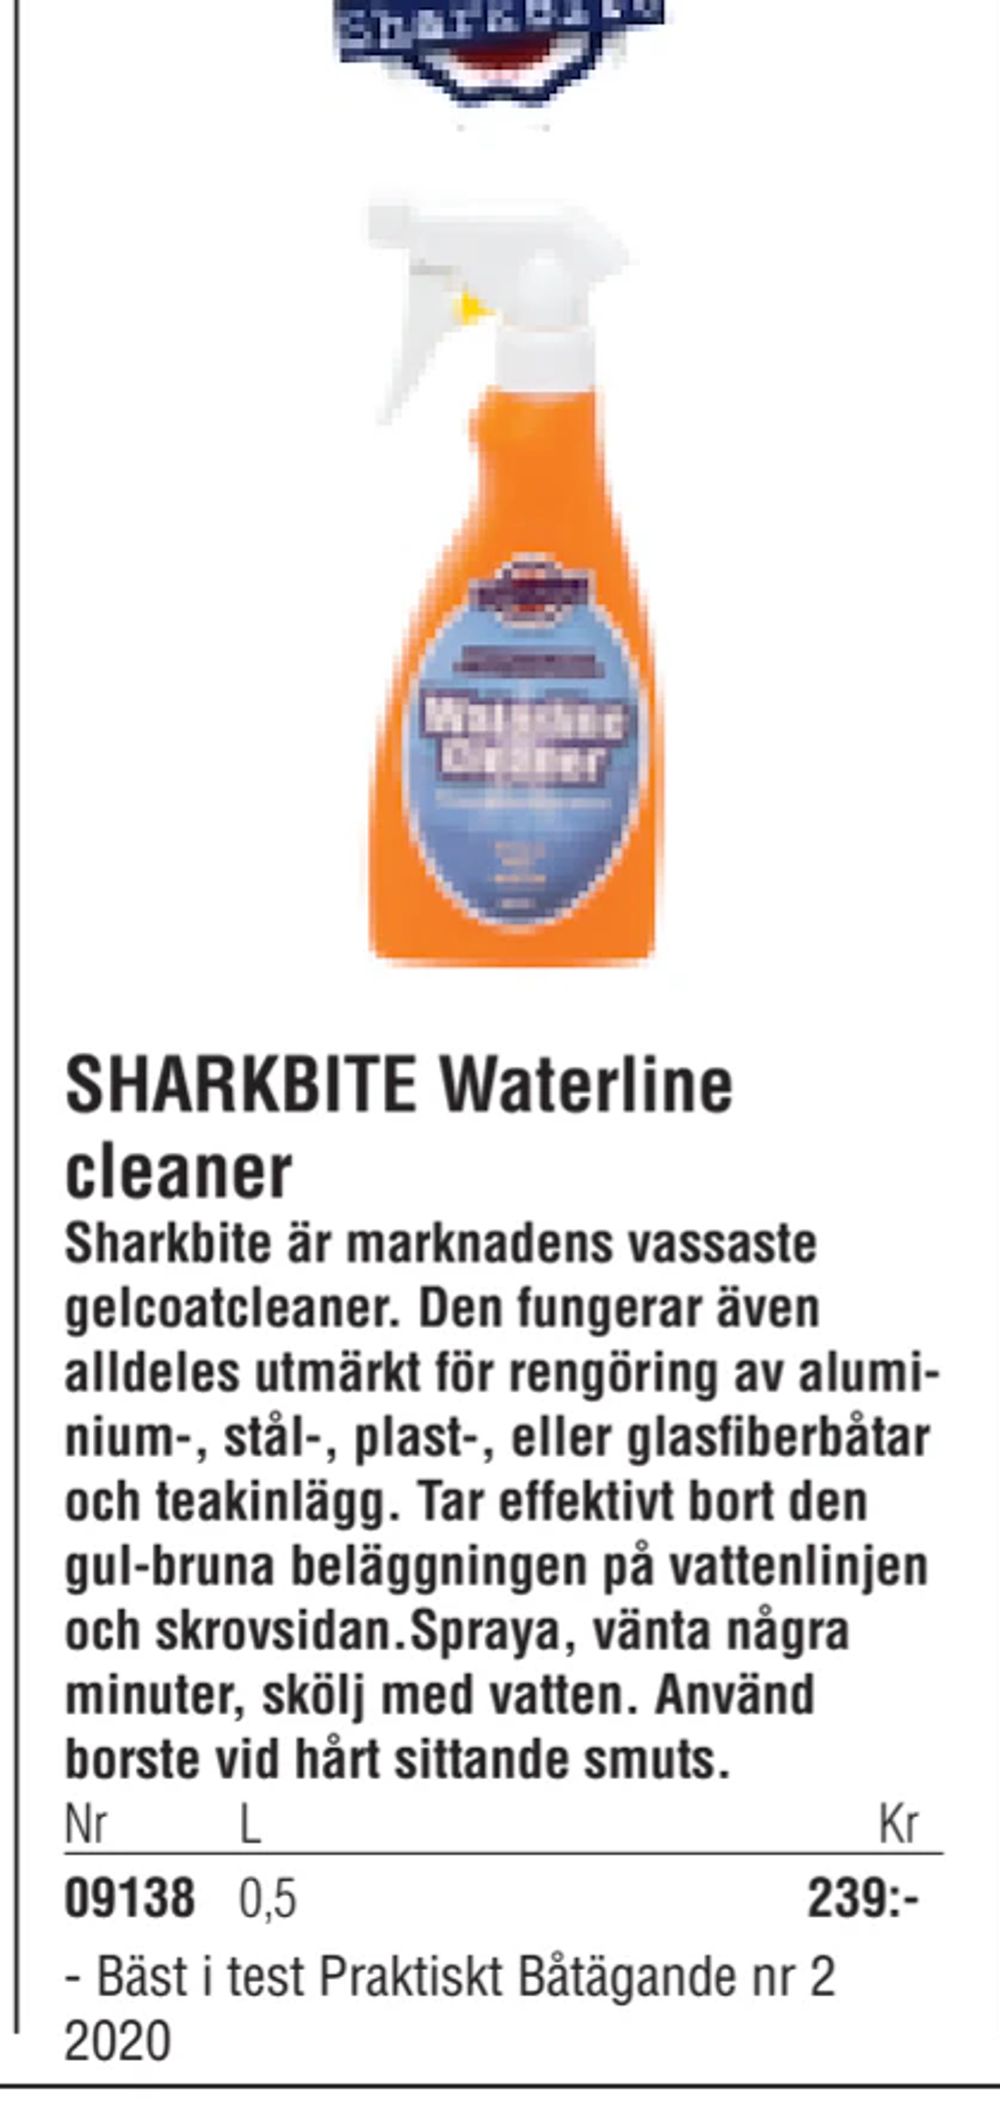 Erbjudanden på SHARKBITE Waterline cleaner från Erlandsons Brygga för 239 kr